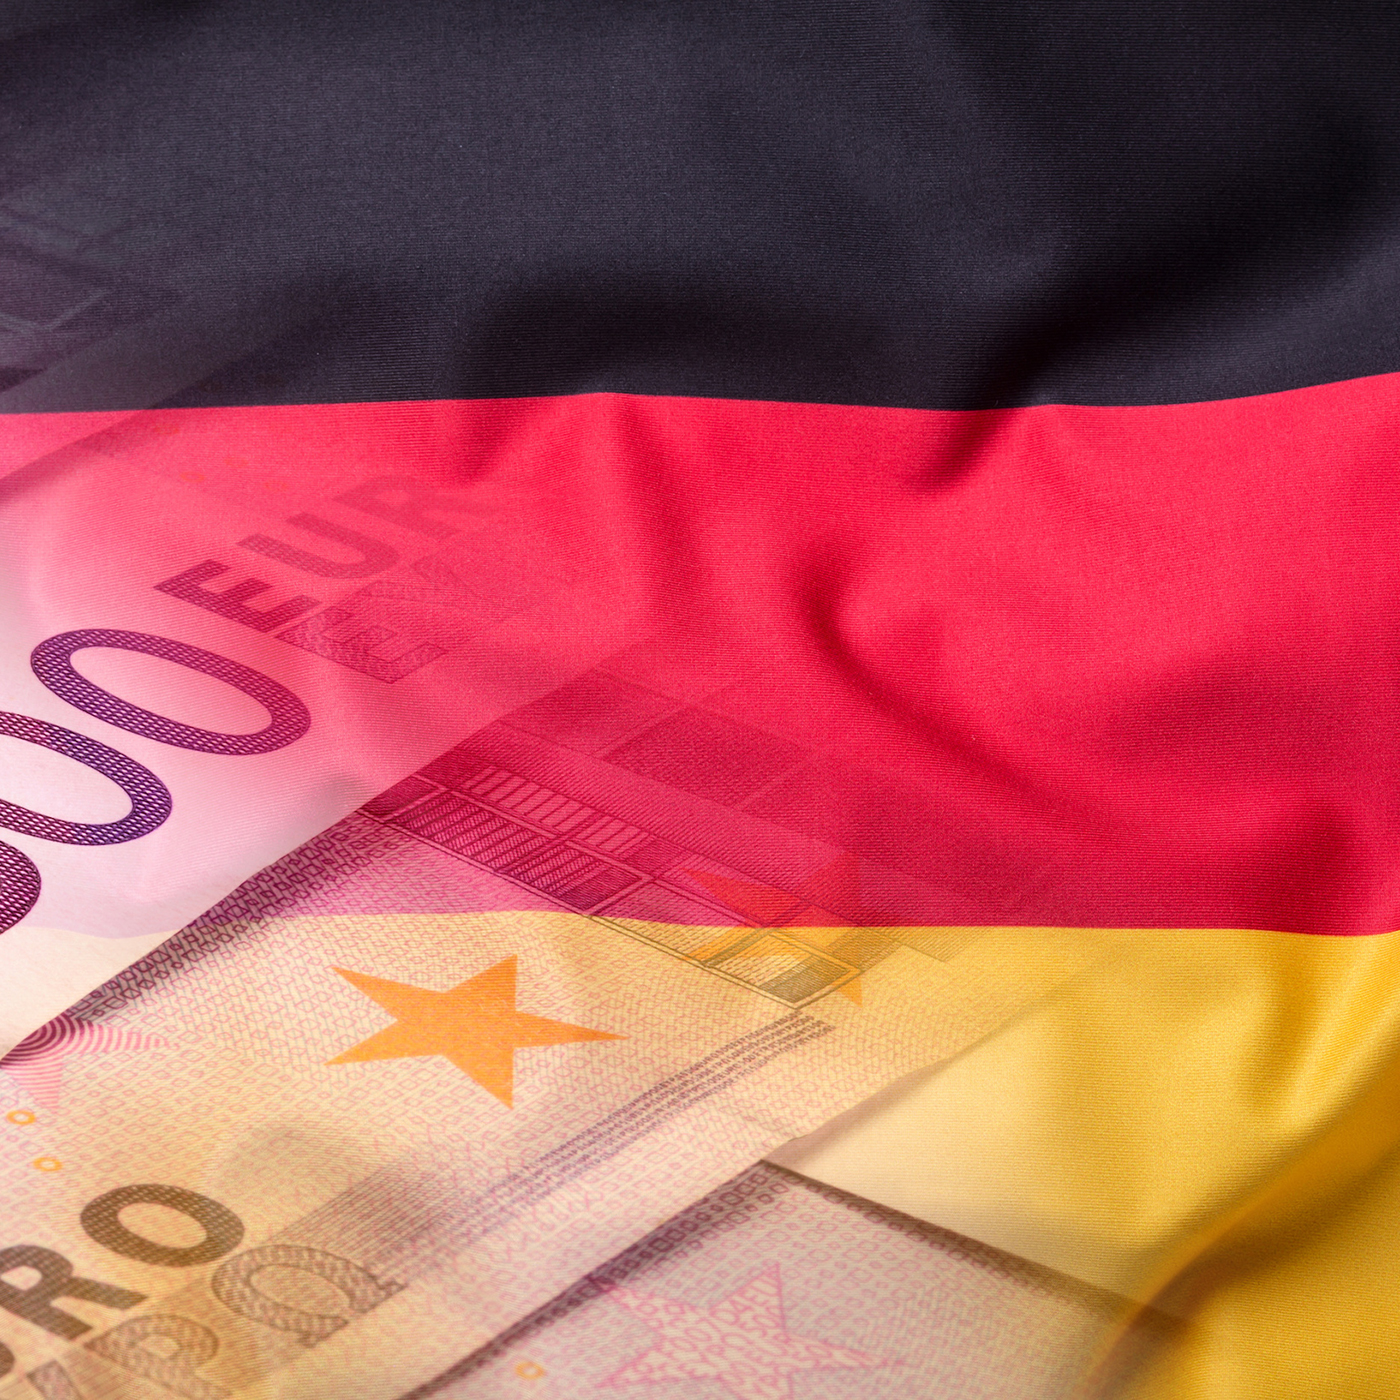 В Германию – через бизнес: какую отрасль выбрать?